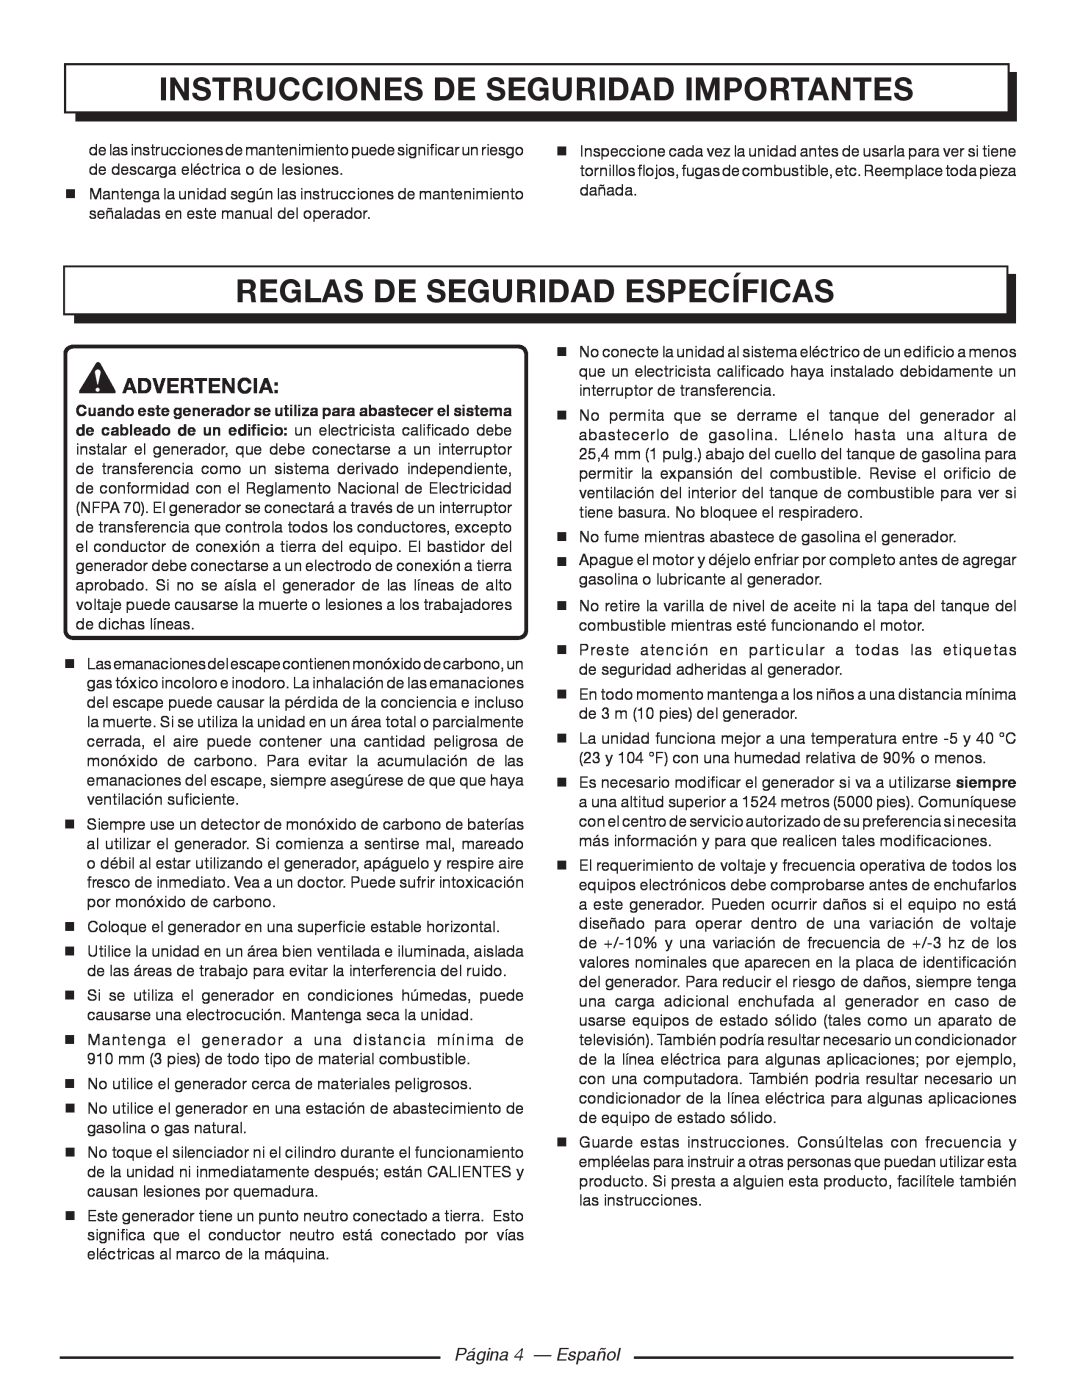 Homelite HG5000 Reglas De Seguridad Específicas, Instrucciones de seguridad importantes, Página 4 — Español 